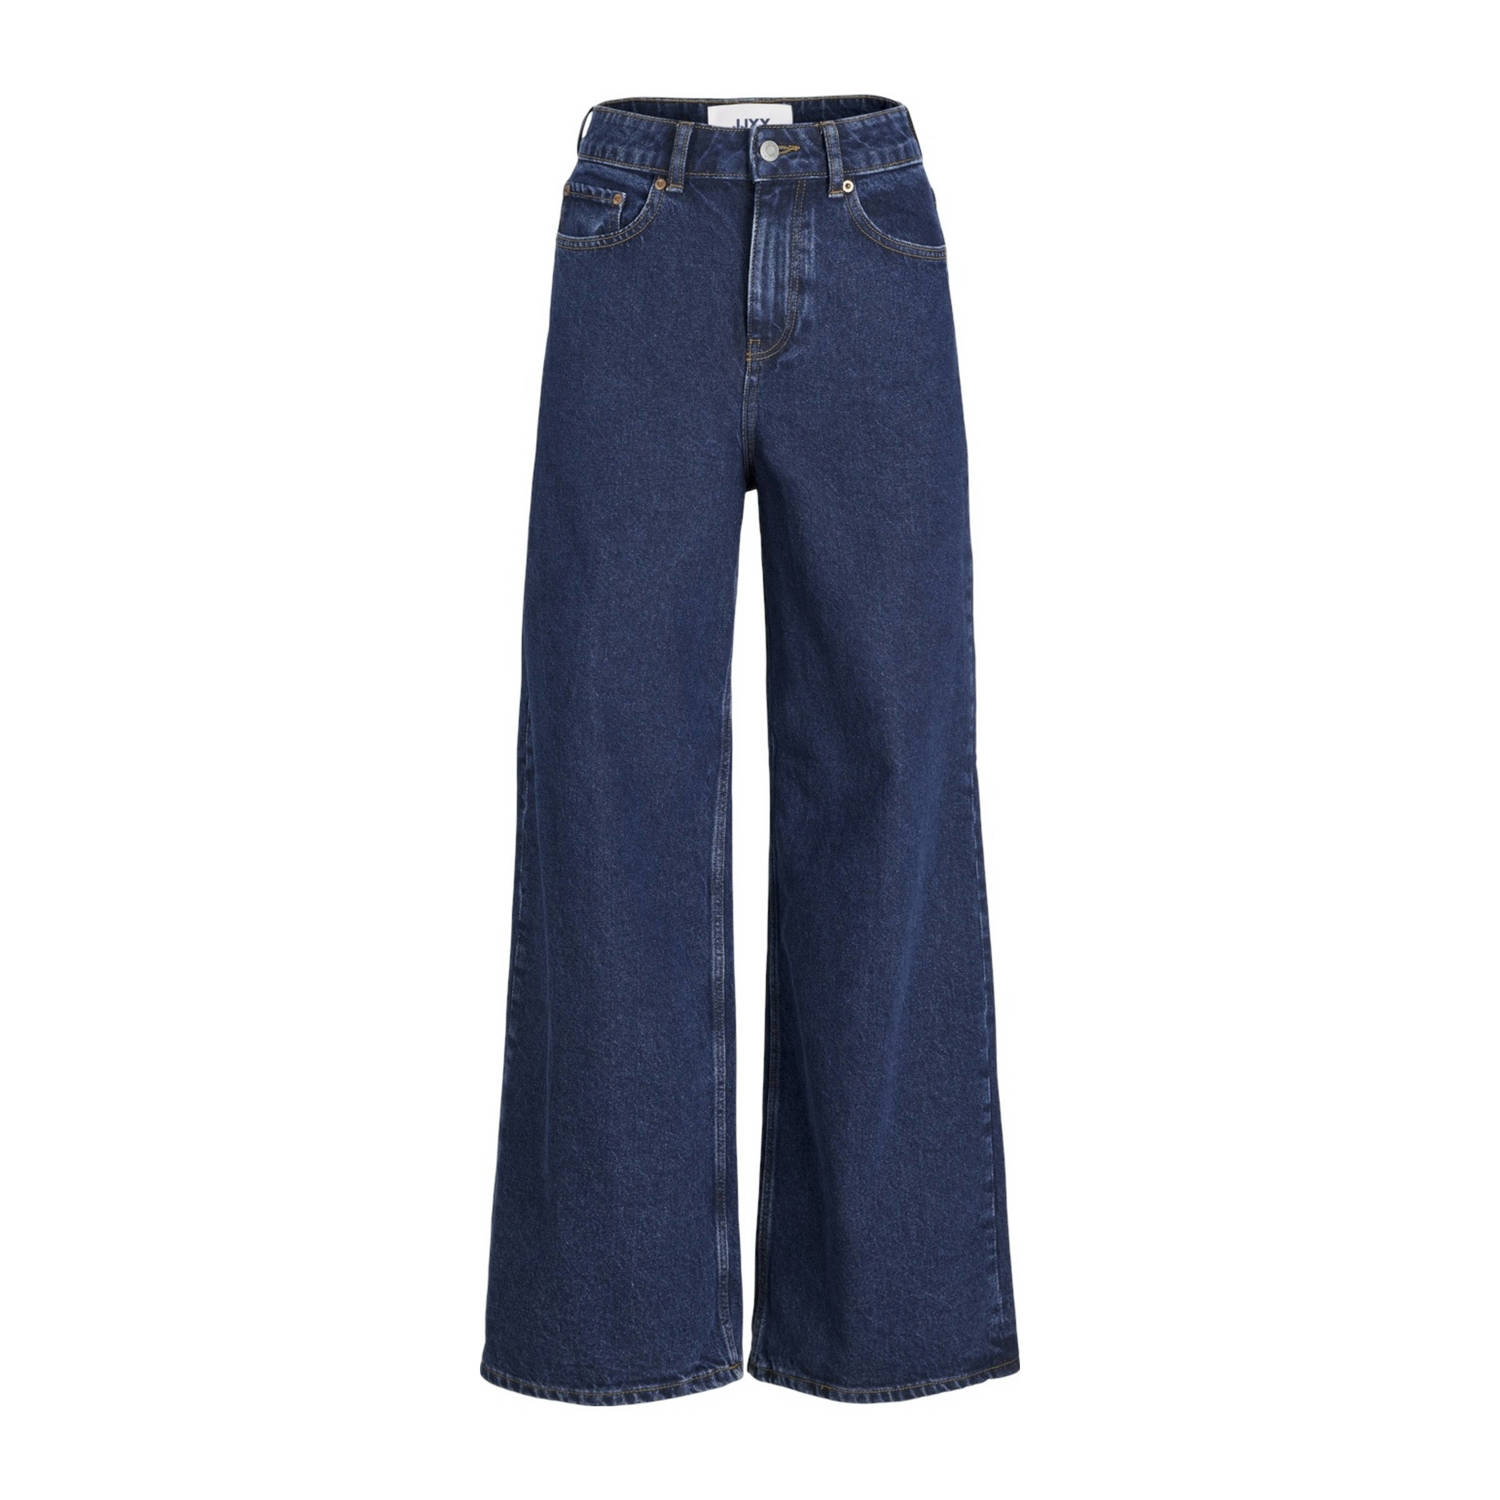 JJXX high waist wide leg jeans dark blue denim